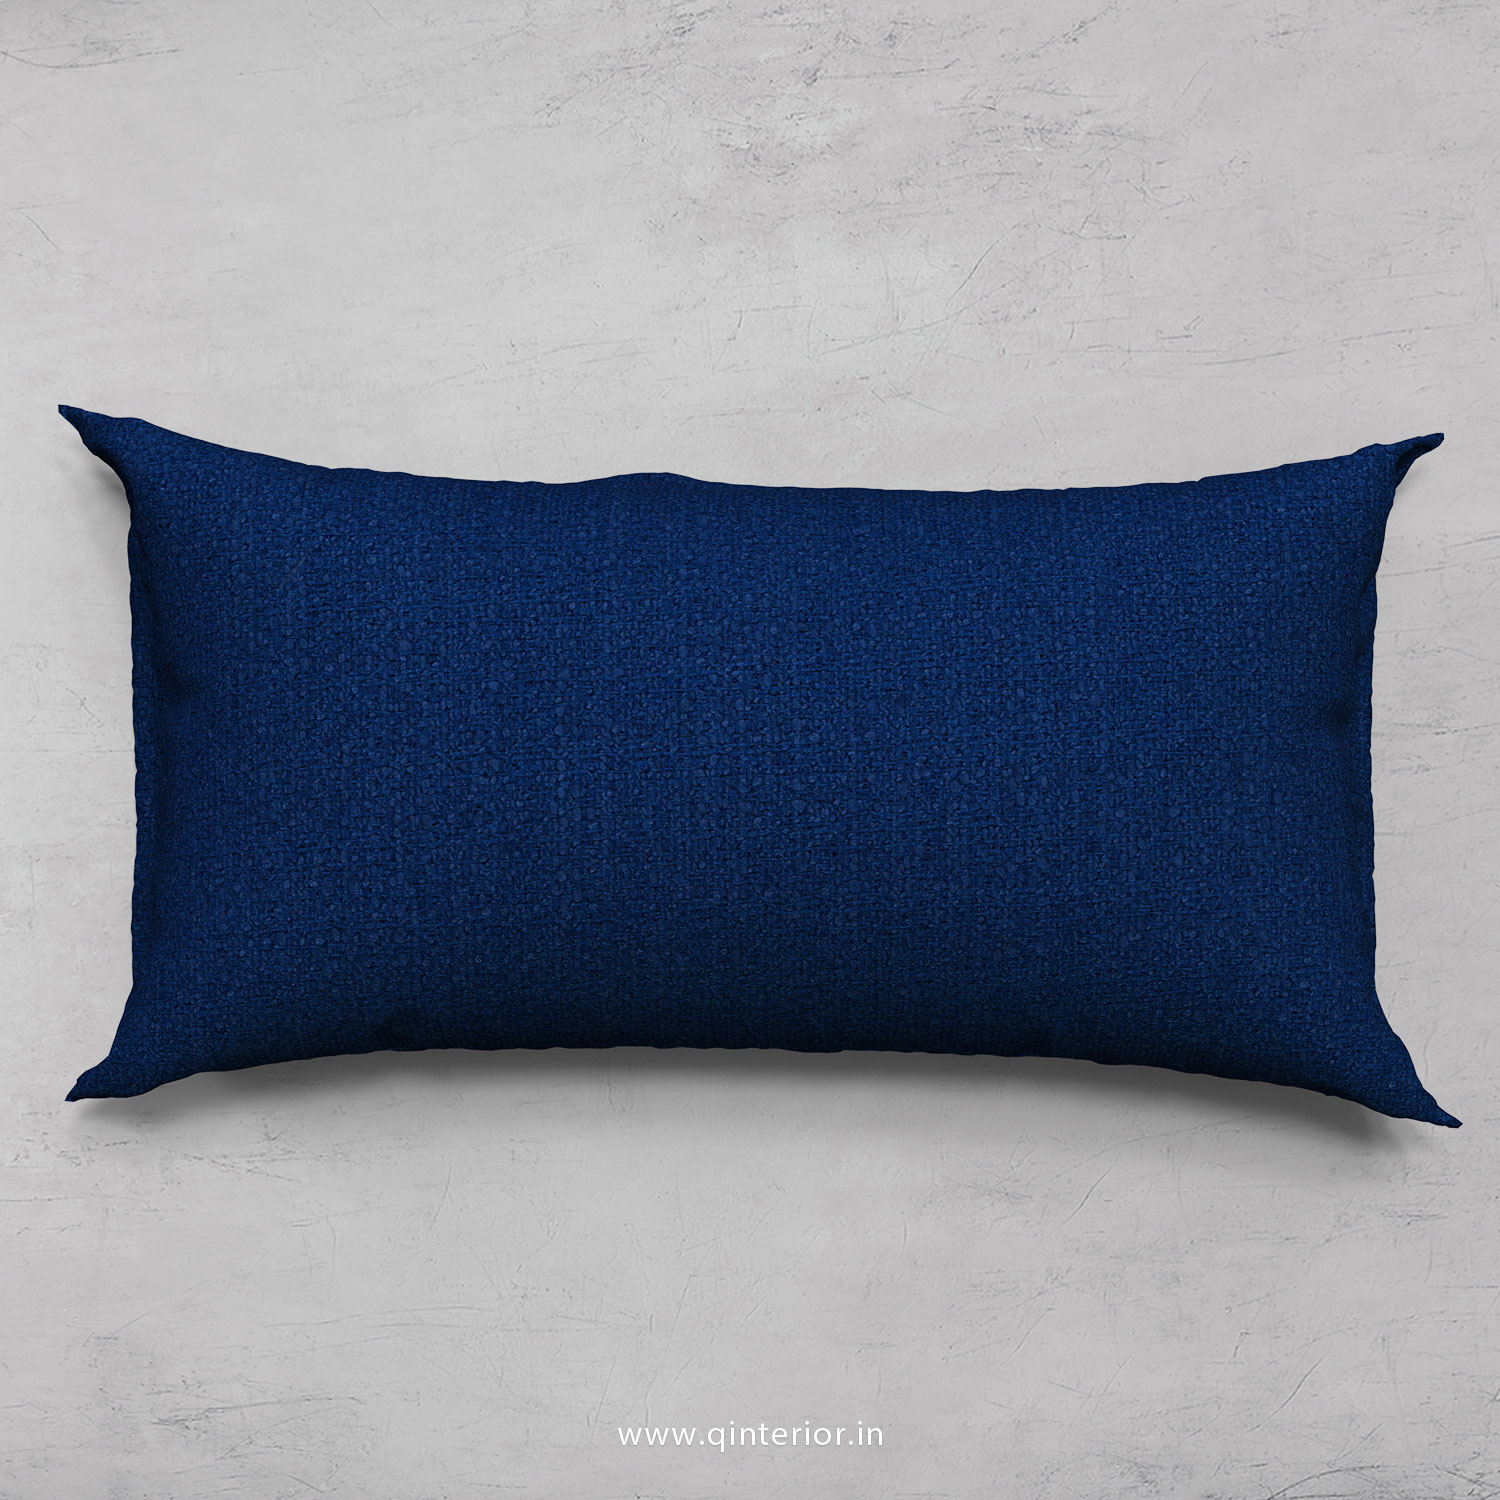 Cushion With Cushion Cover in Bargello- CUS002 BG07